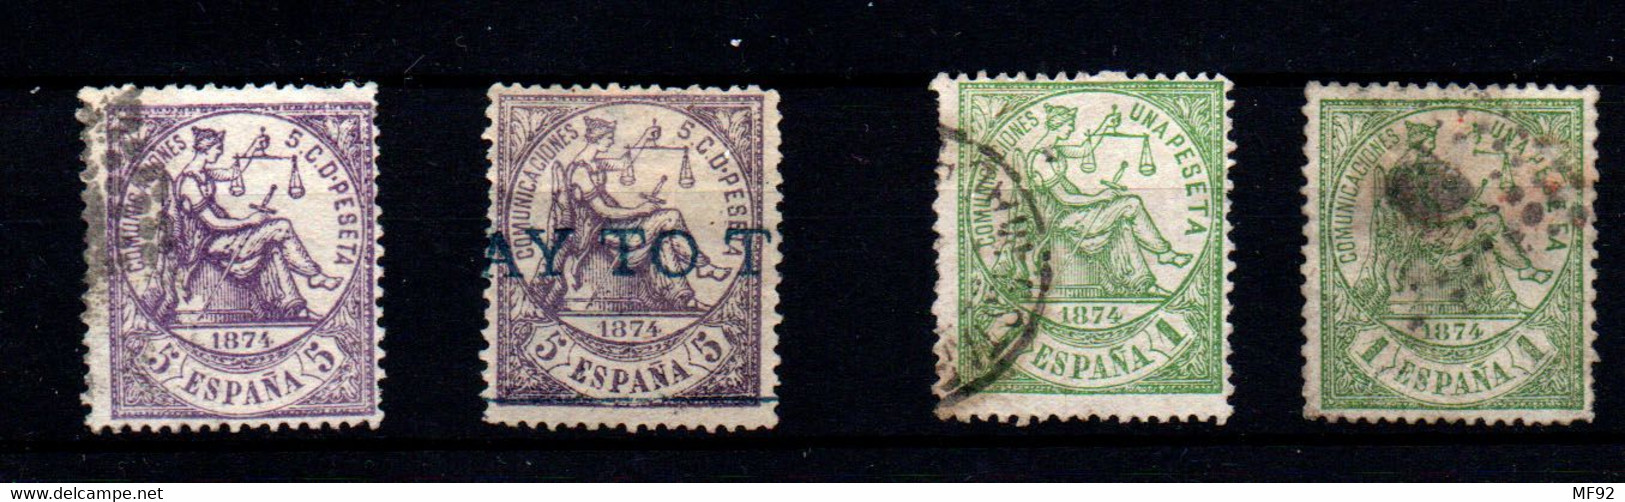 España Nº 144, 150 . Año 1874 - Usados